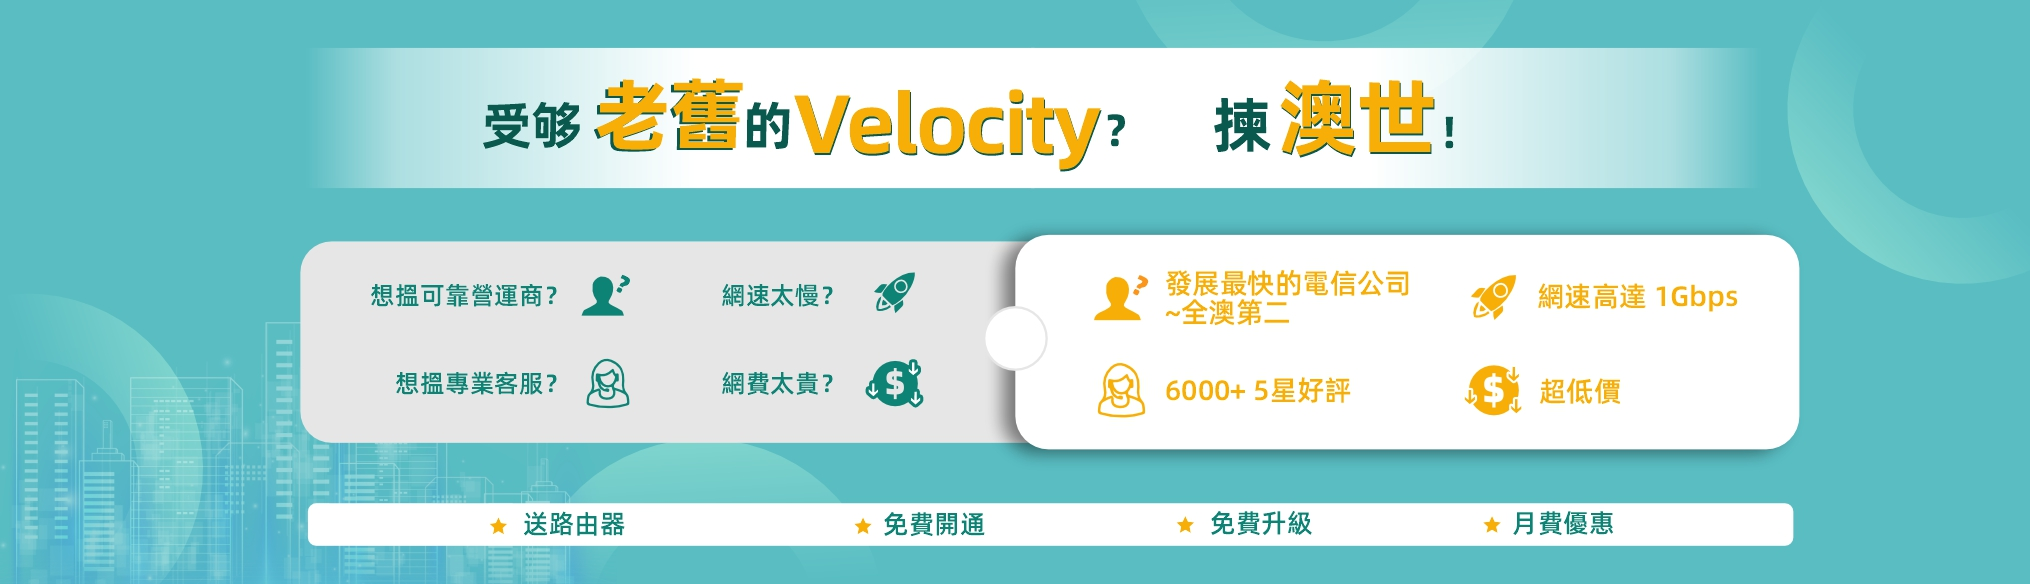 velocity promo hk